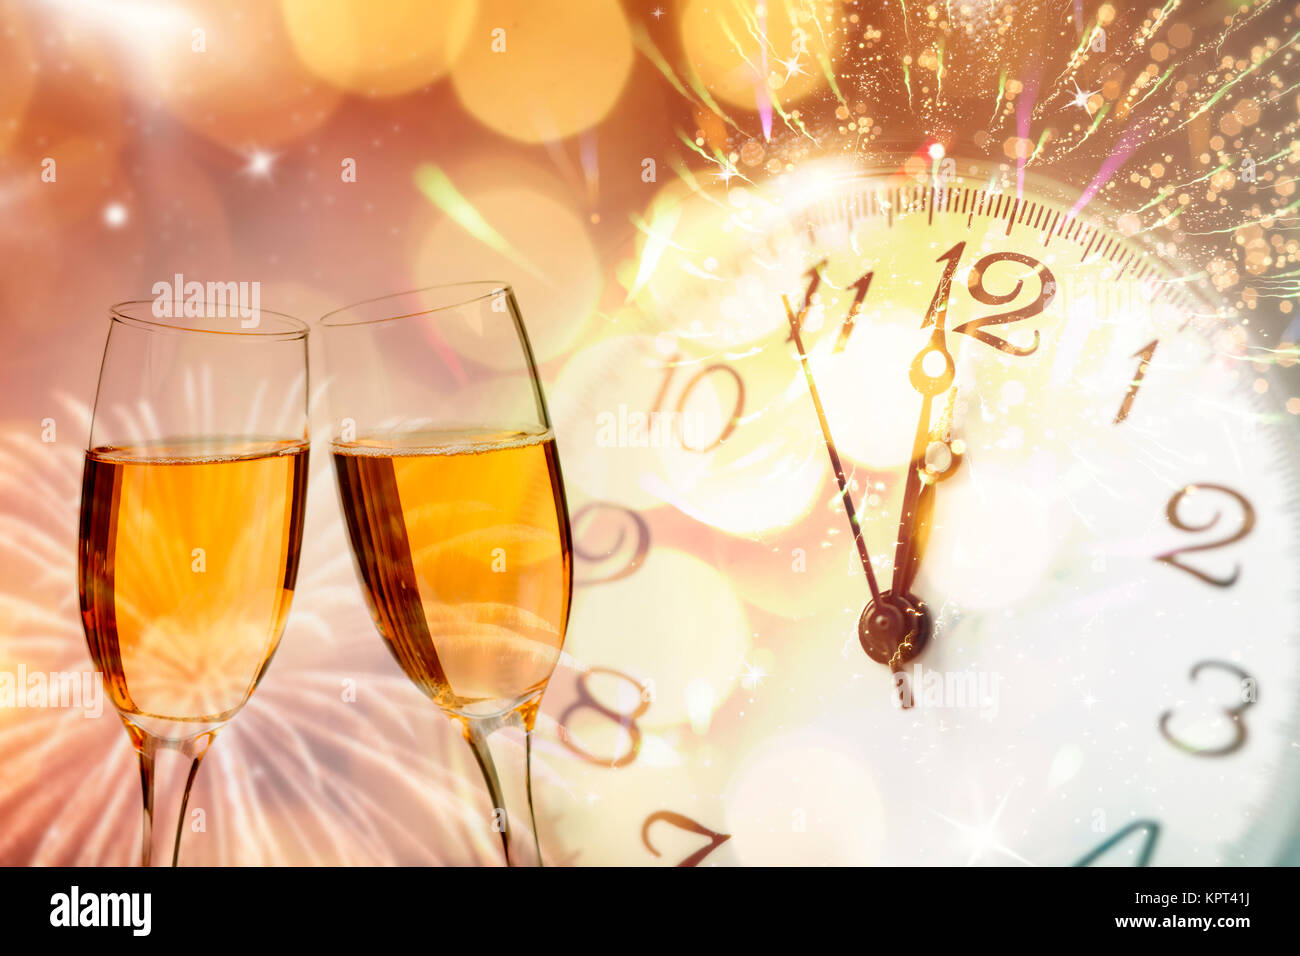 Gläser mit Champagner gegen Feuerwerk und die Uhr Kurz vor Mitternacht - Feiern das Neue Jahr Stockfoto